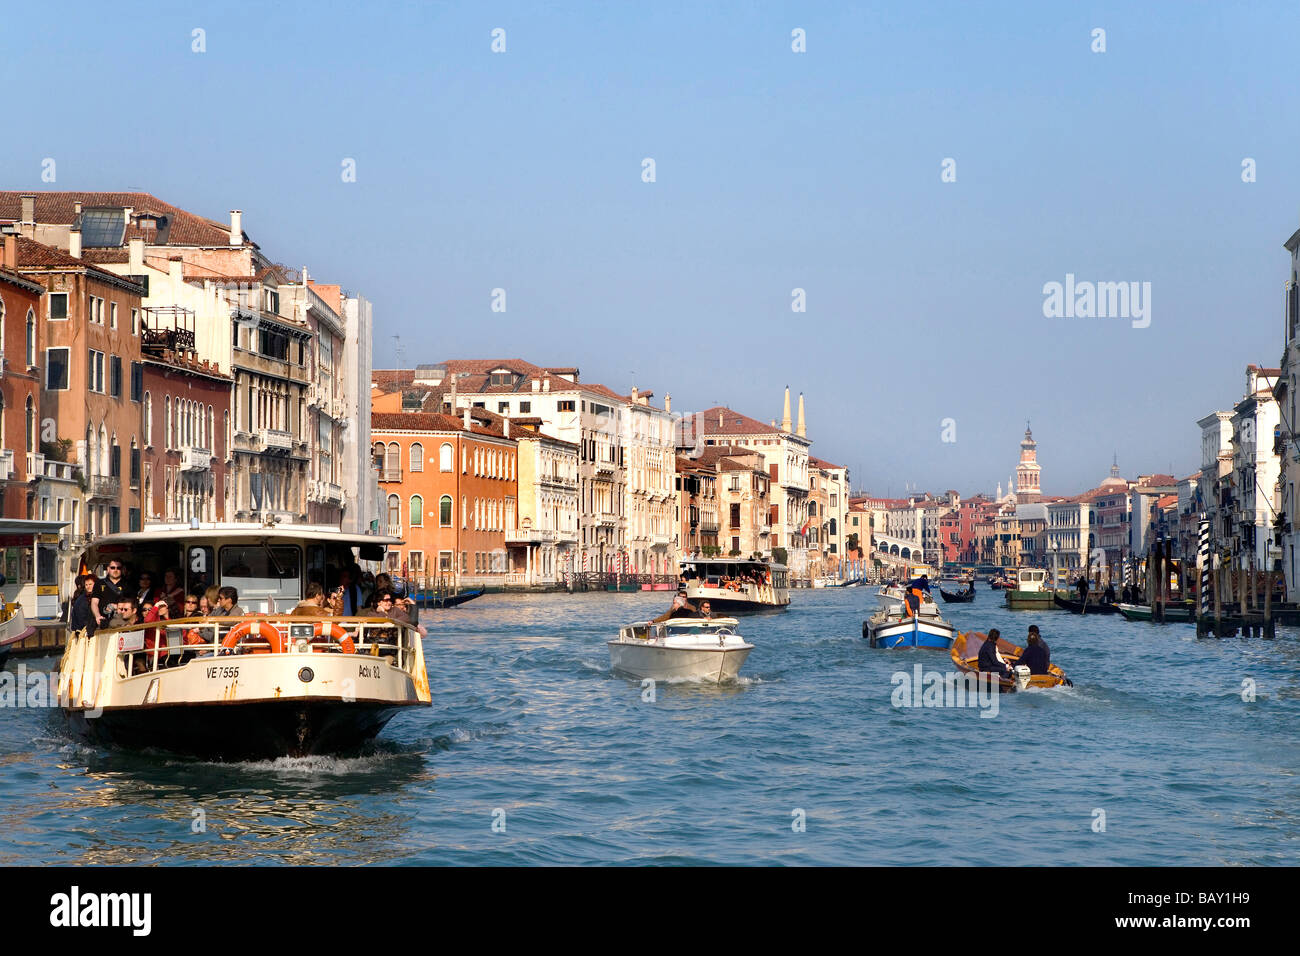 Grand Canal with Vaporetto, motorized waterbus, Venice, Veneto, Italy Stock Photo